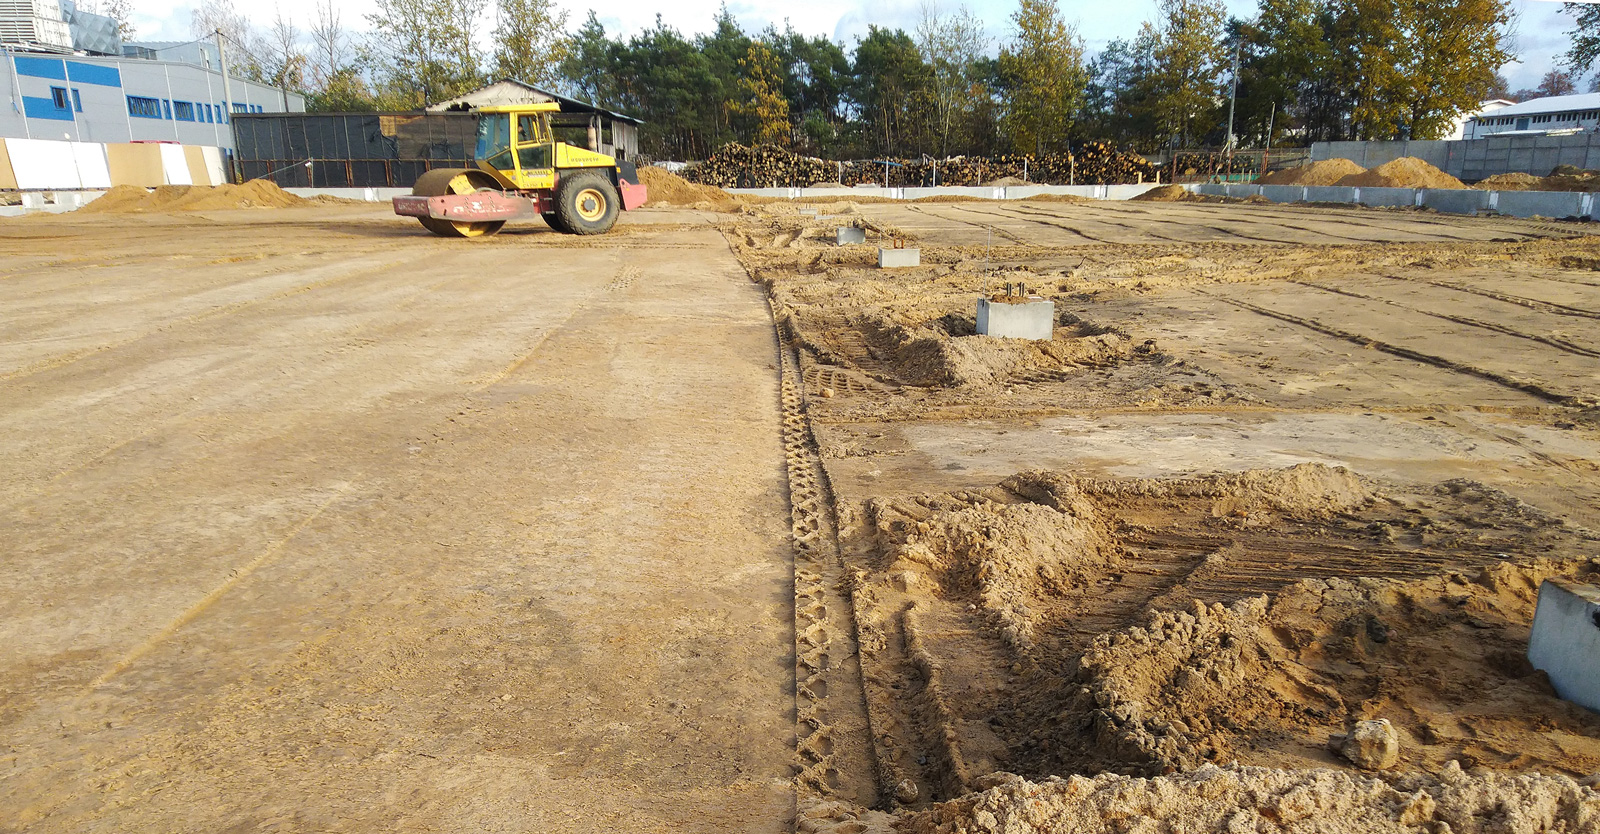 zagęszczanie podsypki piaskowej - rozbudowa kompleksu hal, dla firmy Meblomaster, w Węgrowie, w woj. mazowiecki, projekt i budowa CoBouw Polska